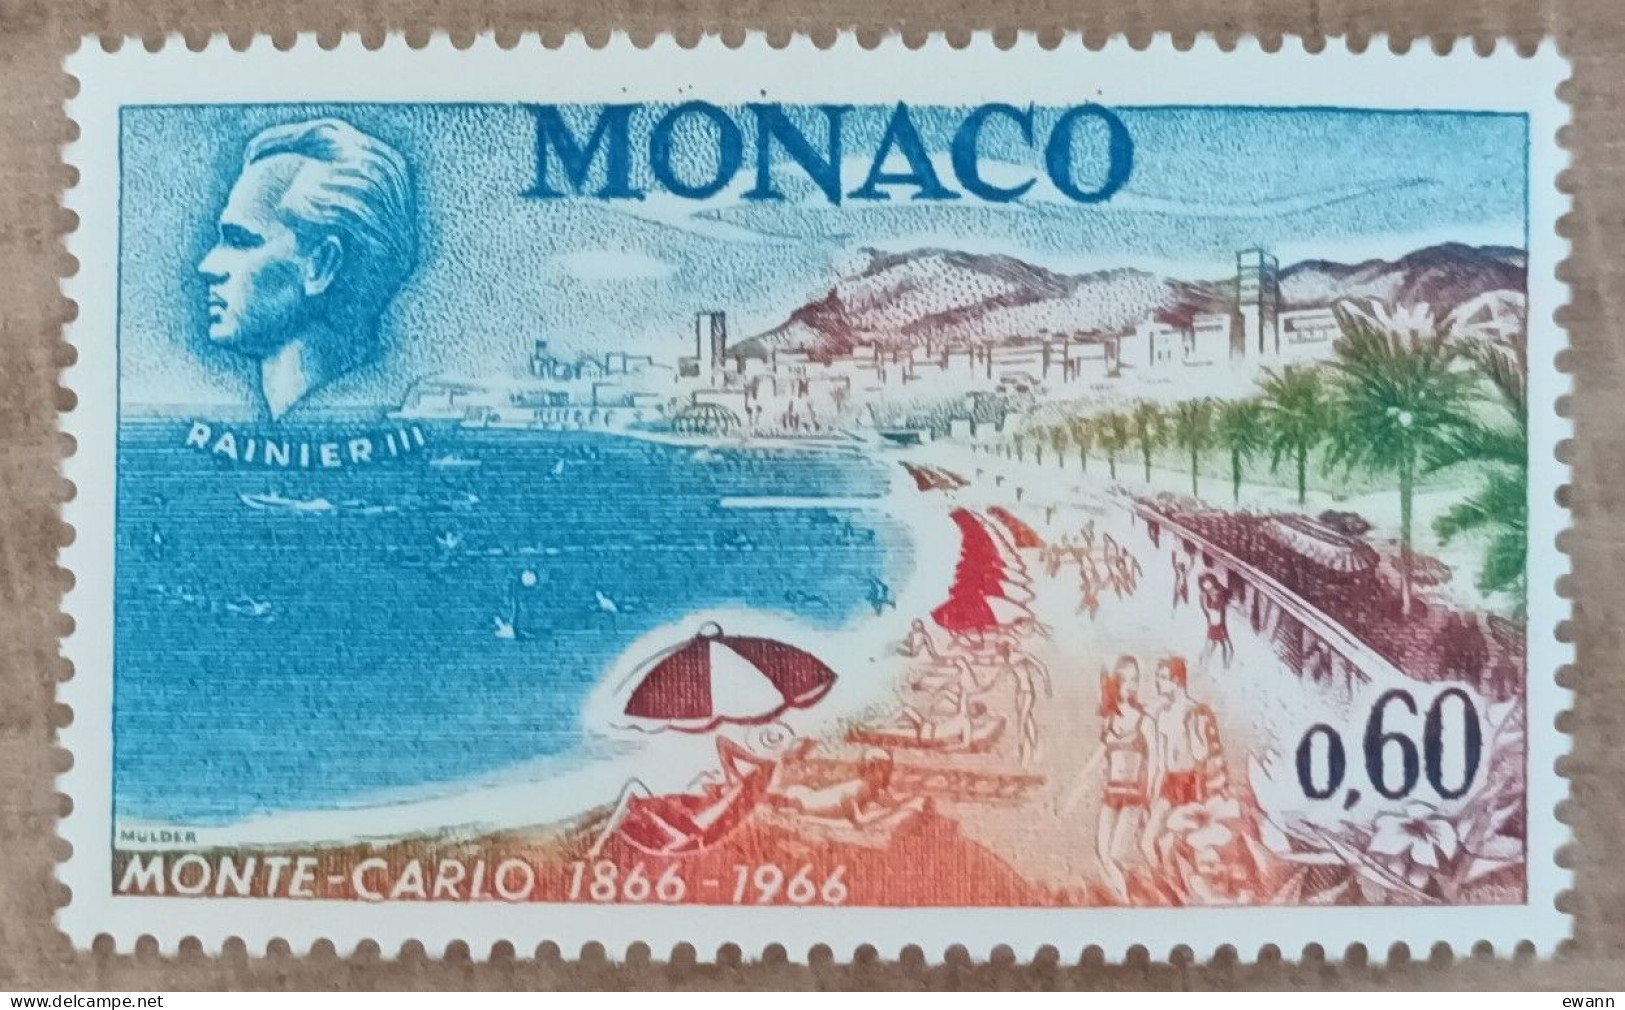 Monaco - YT N°694 - Centenaire De Monte Carlo - 1966 - Neuf - Nuovi